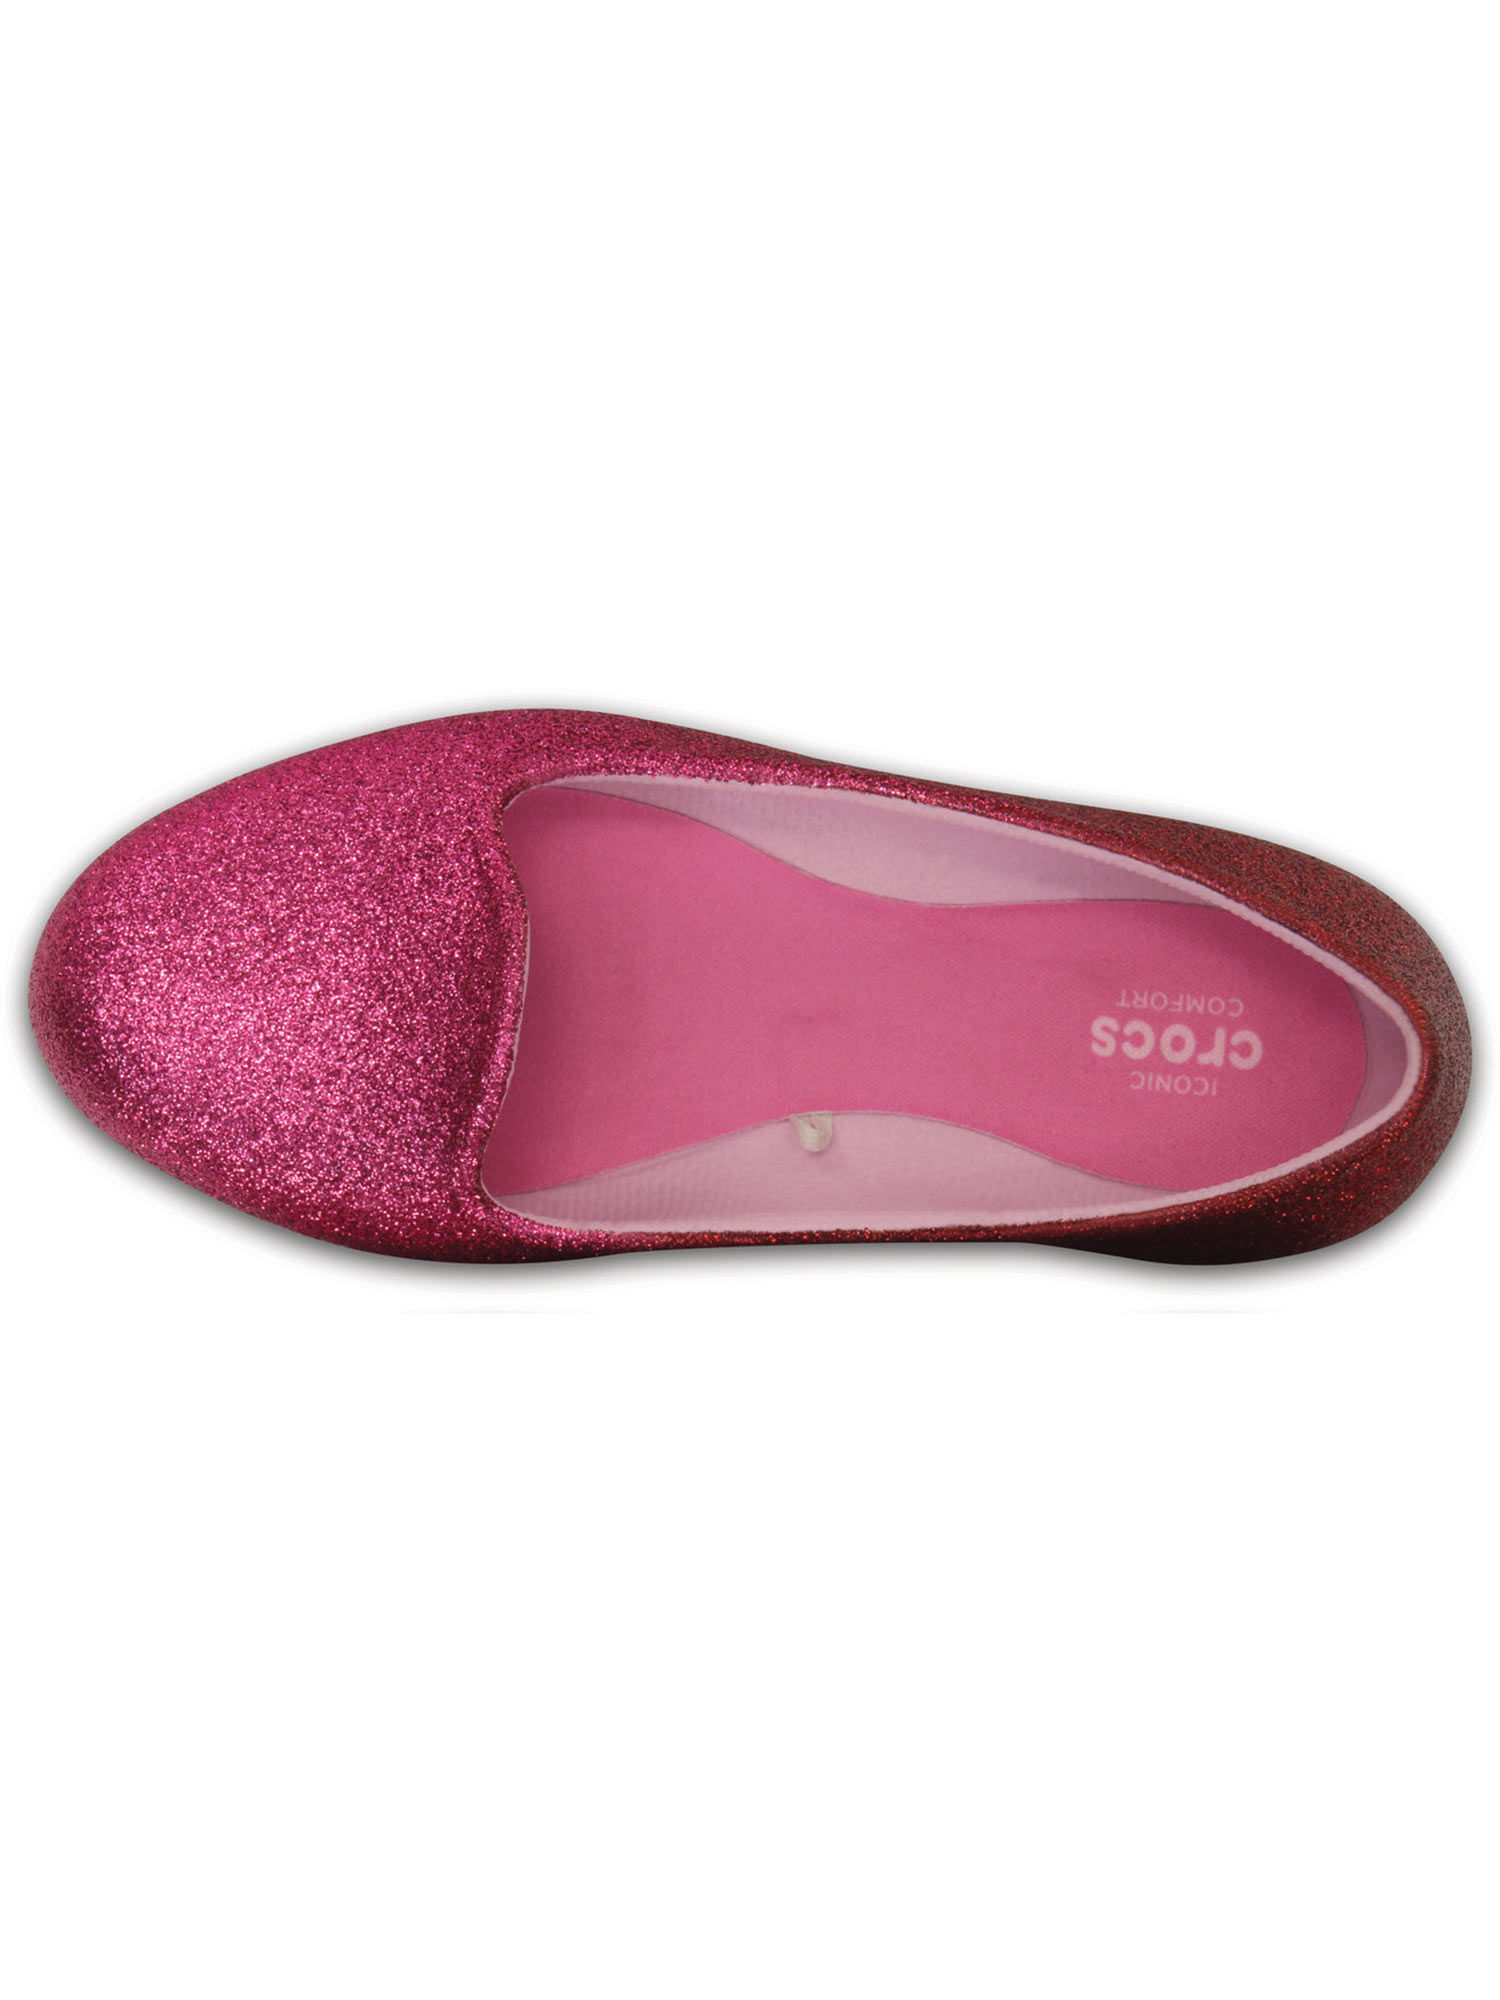 Crocs Pink Eve Embellished Ballerina (C13): Buy Crocs Pink Eve ...